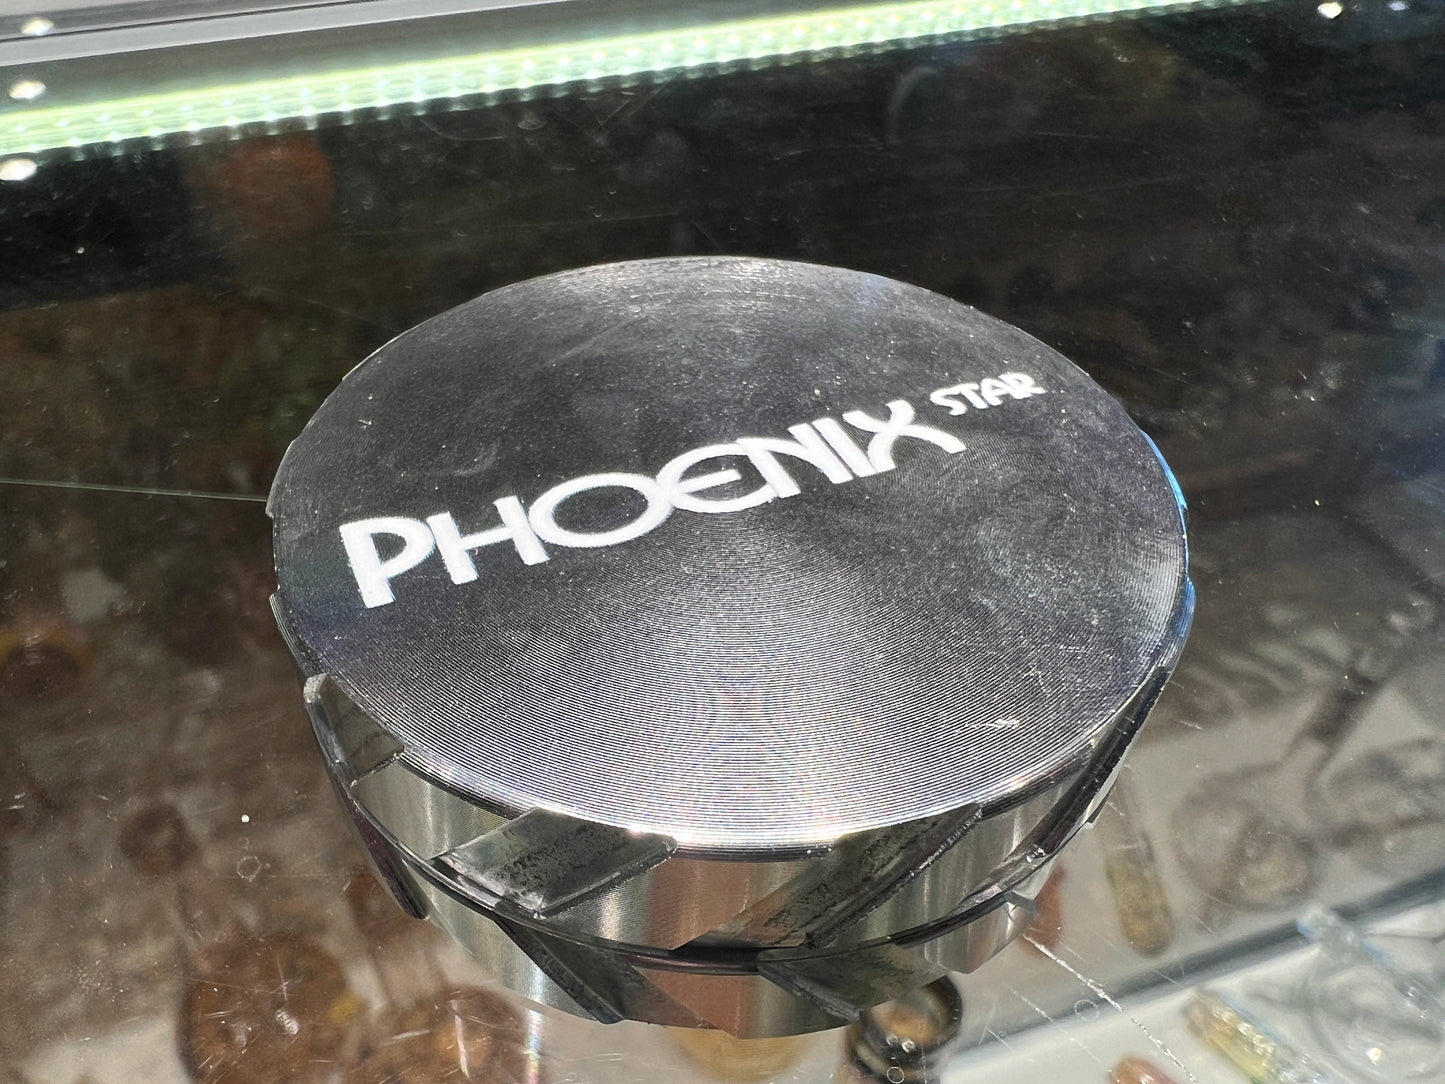 PhoenixStar Two Piece Grinder, 2.5"